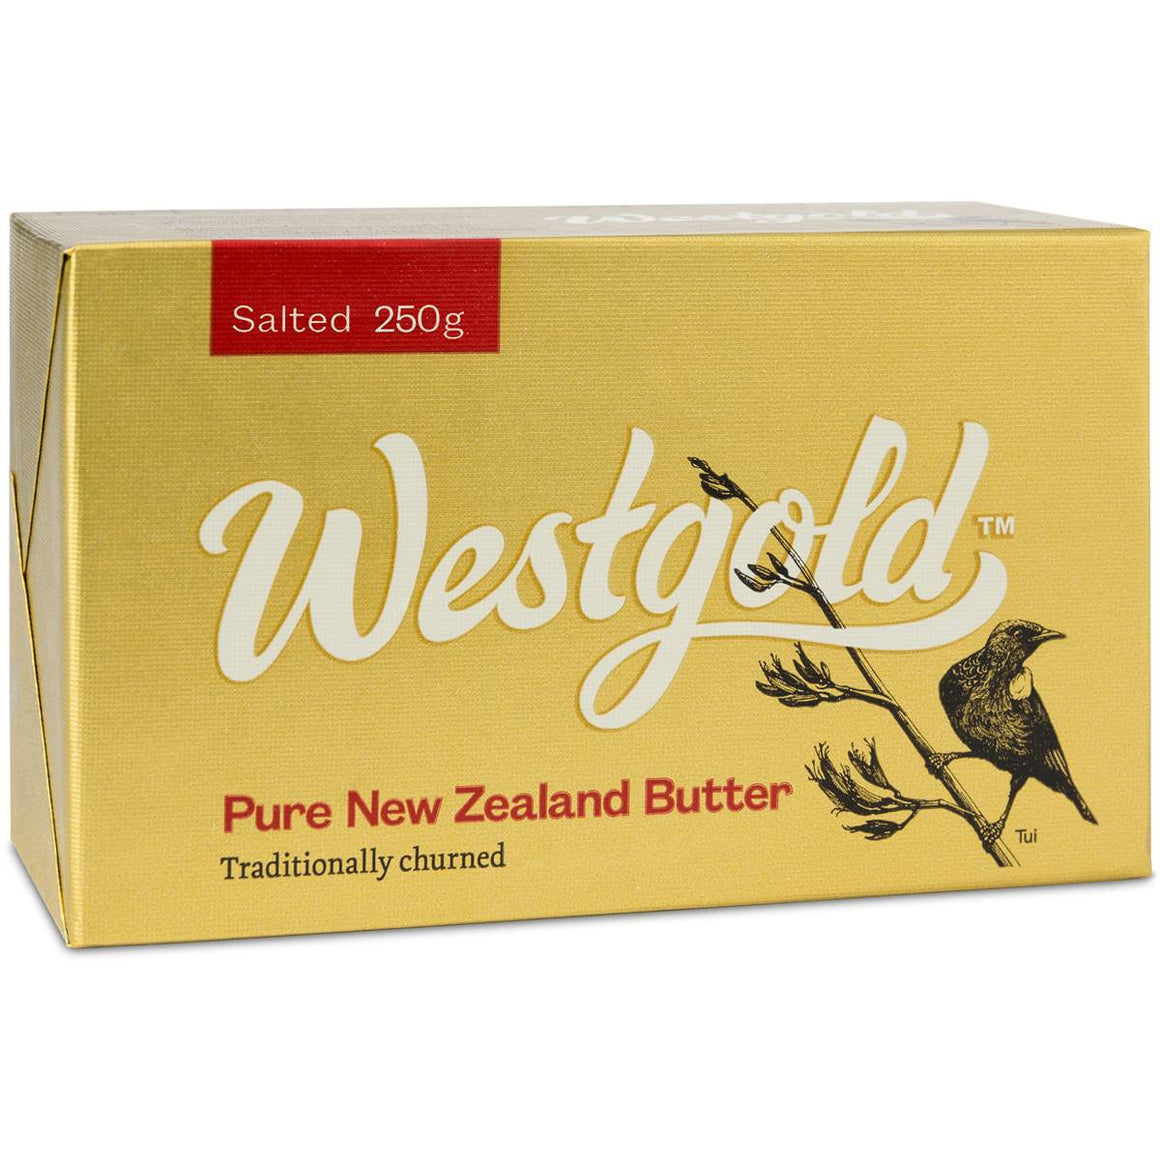 WESTGOLD NZ Butter 250gm Salted